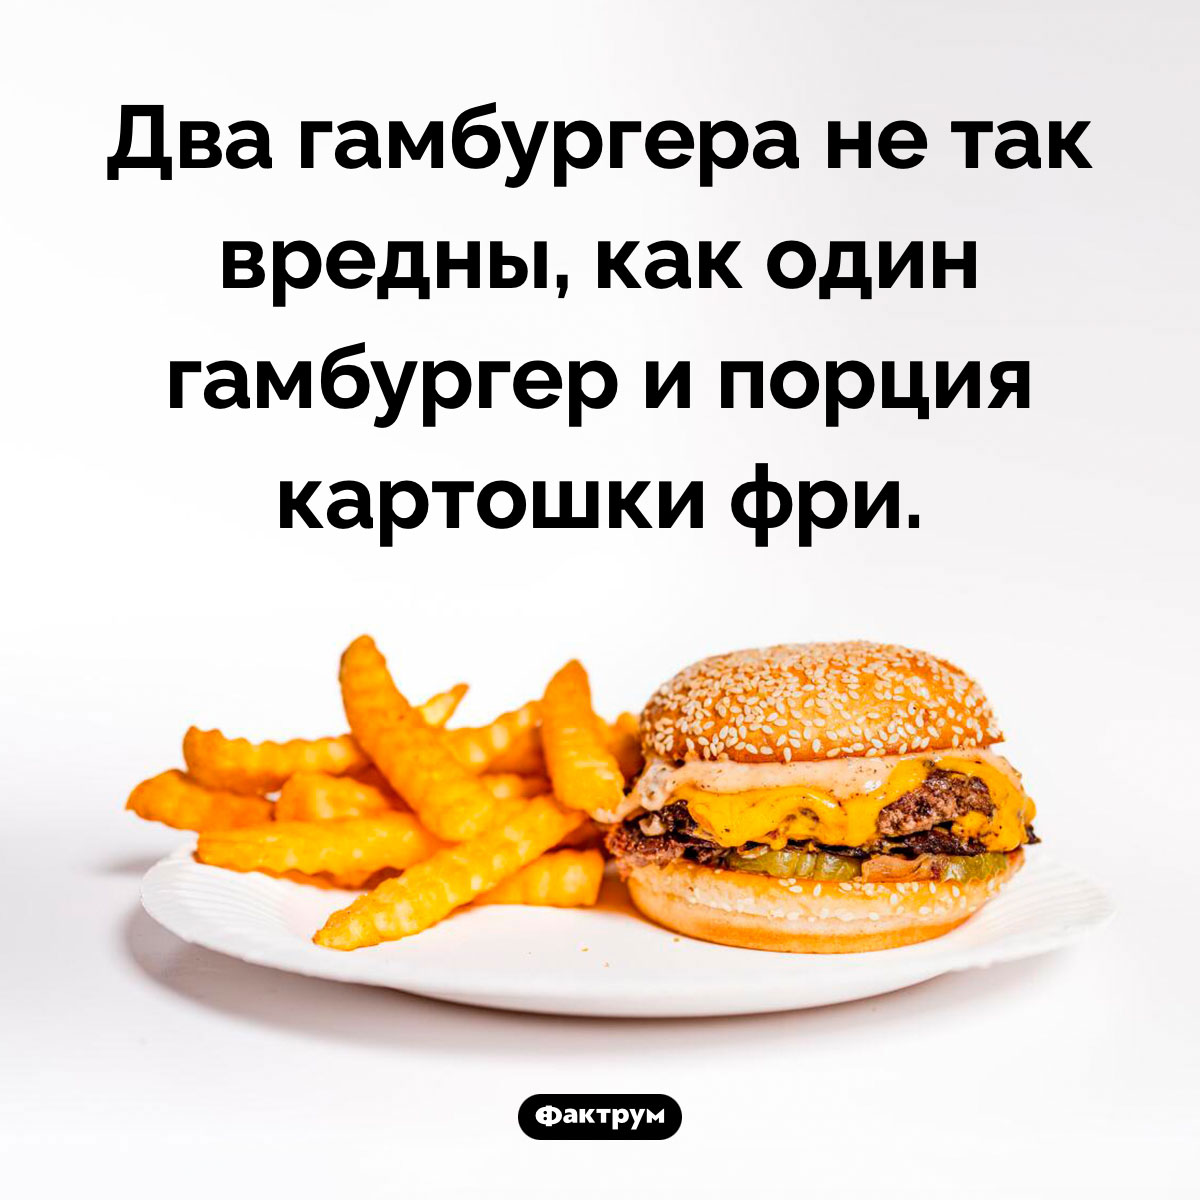 Картошка фри вреднее гамбургера. Два гамбургера не так вредны, как один гамбургер и порция картошки фри.